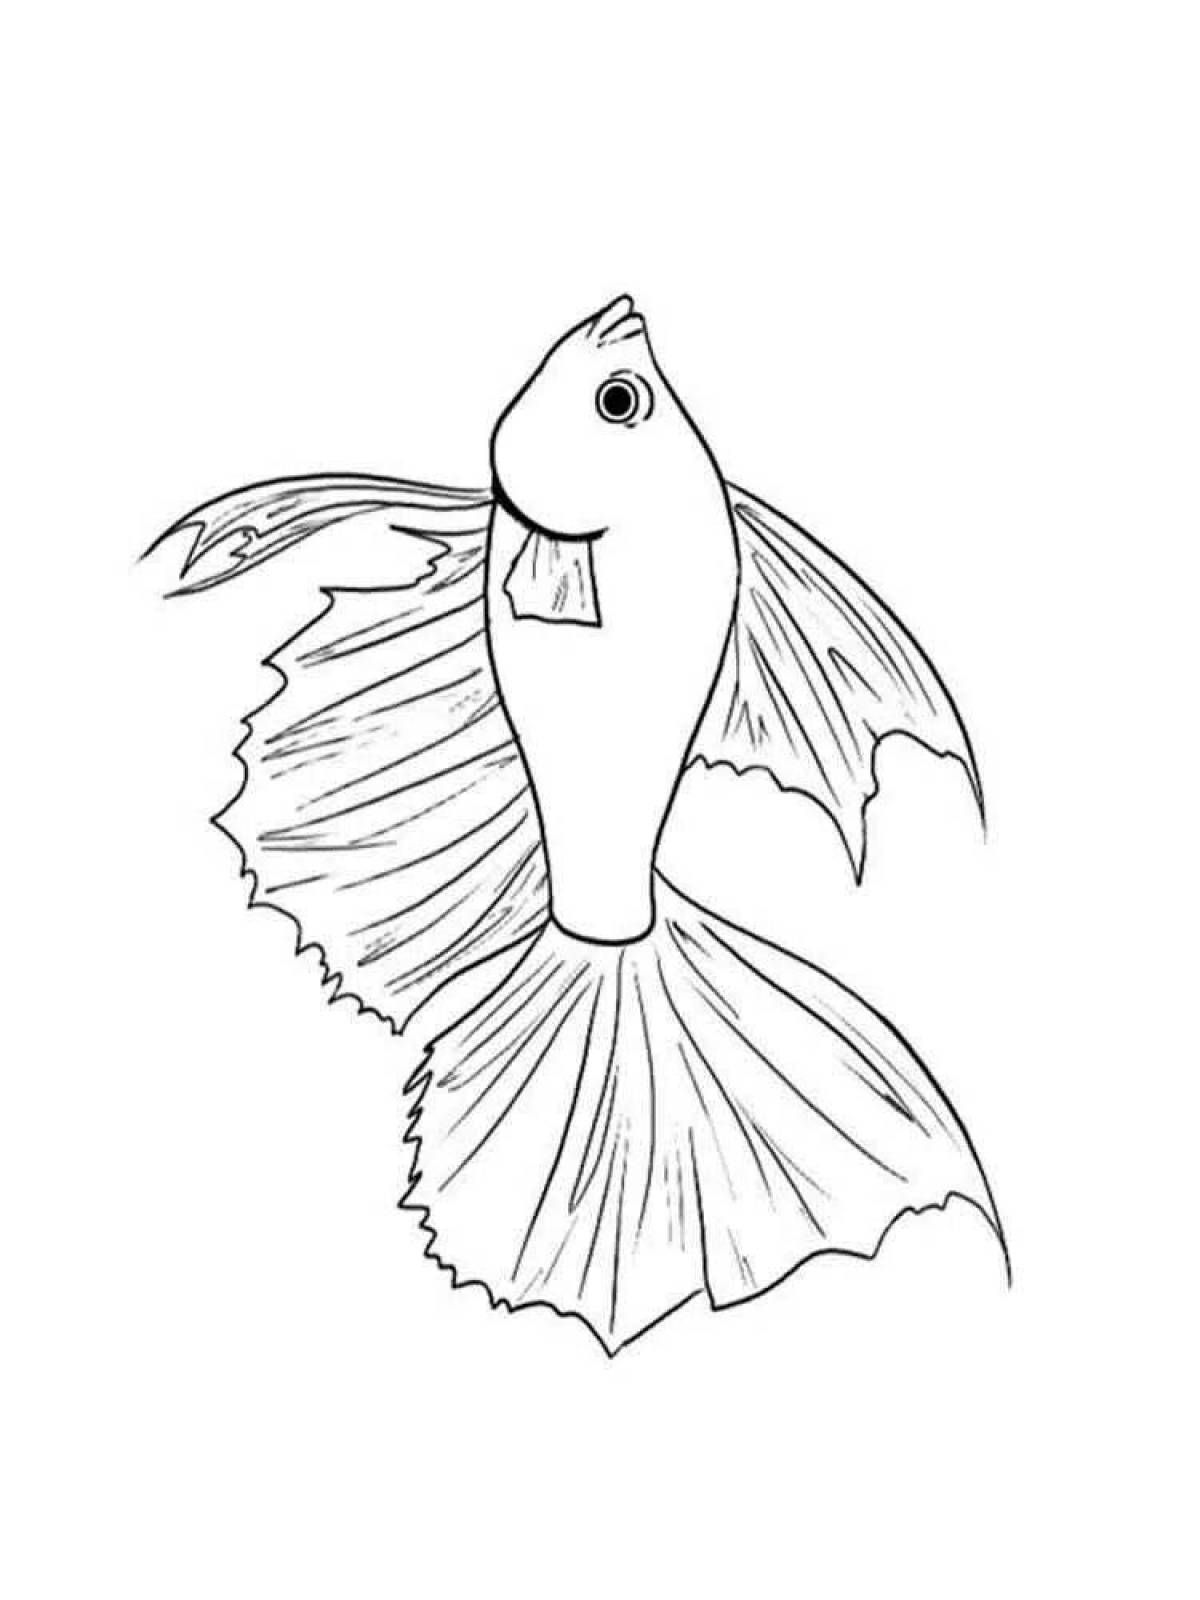 Coloring page delicious cockerel fish